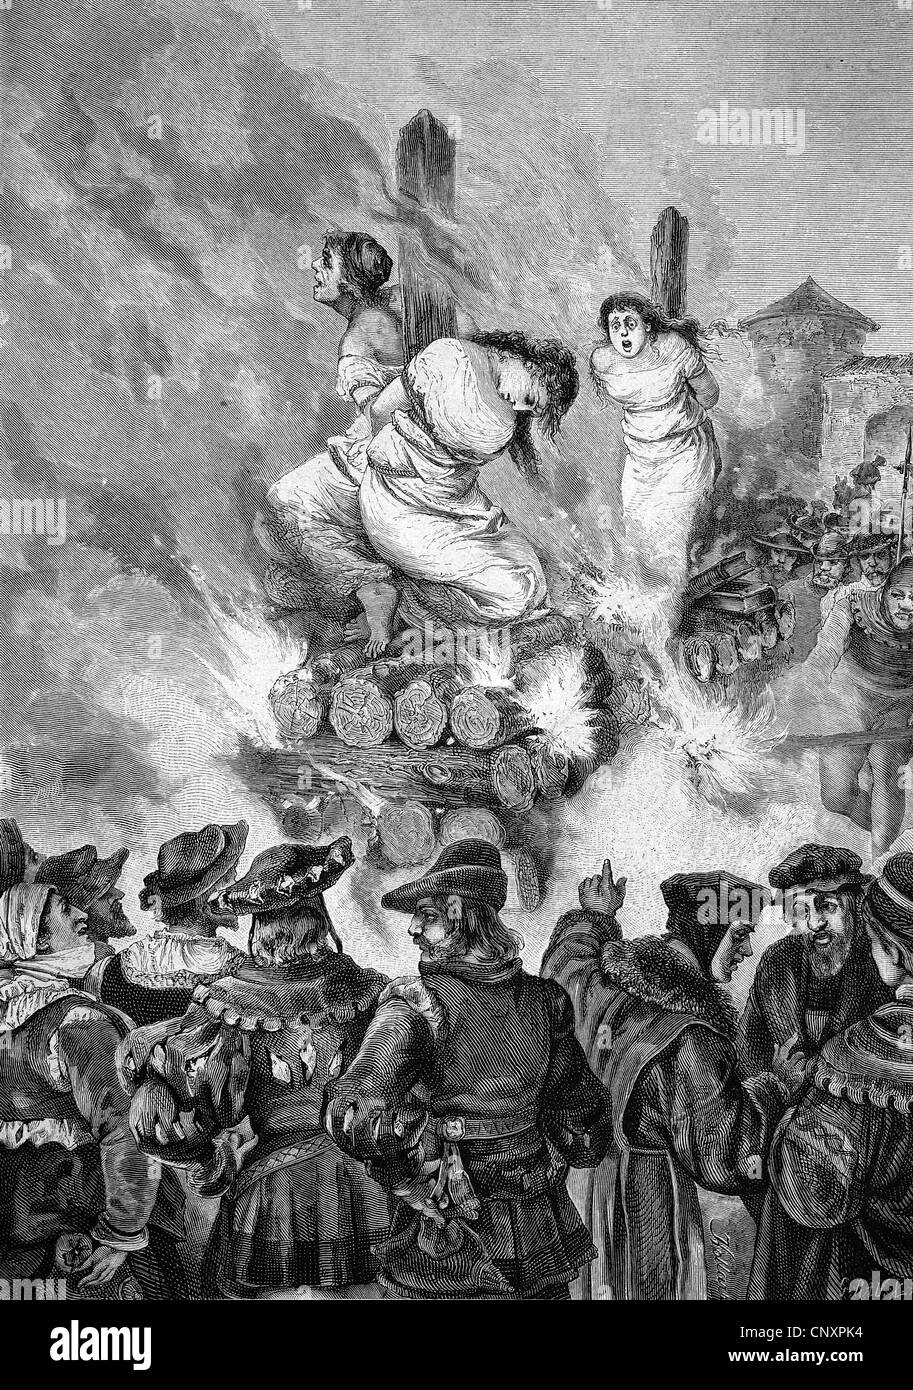 Brûler des sorcières à l'époque médiévale, la gravure de 1883 historique Banque D'Images